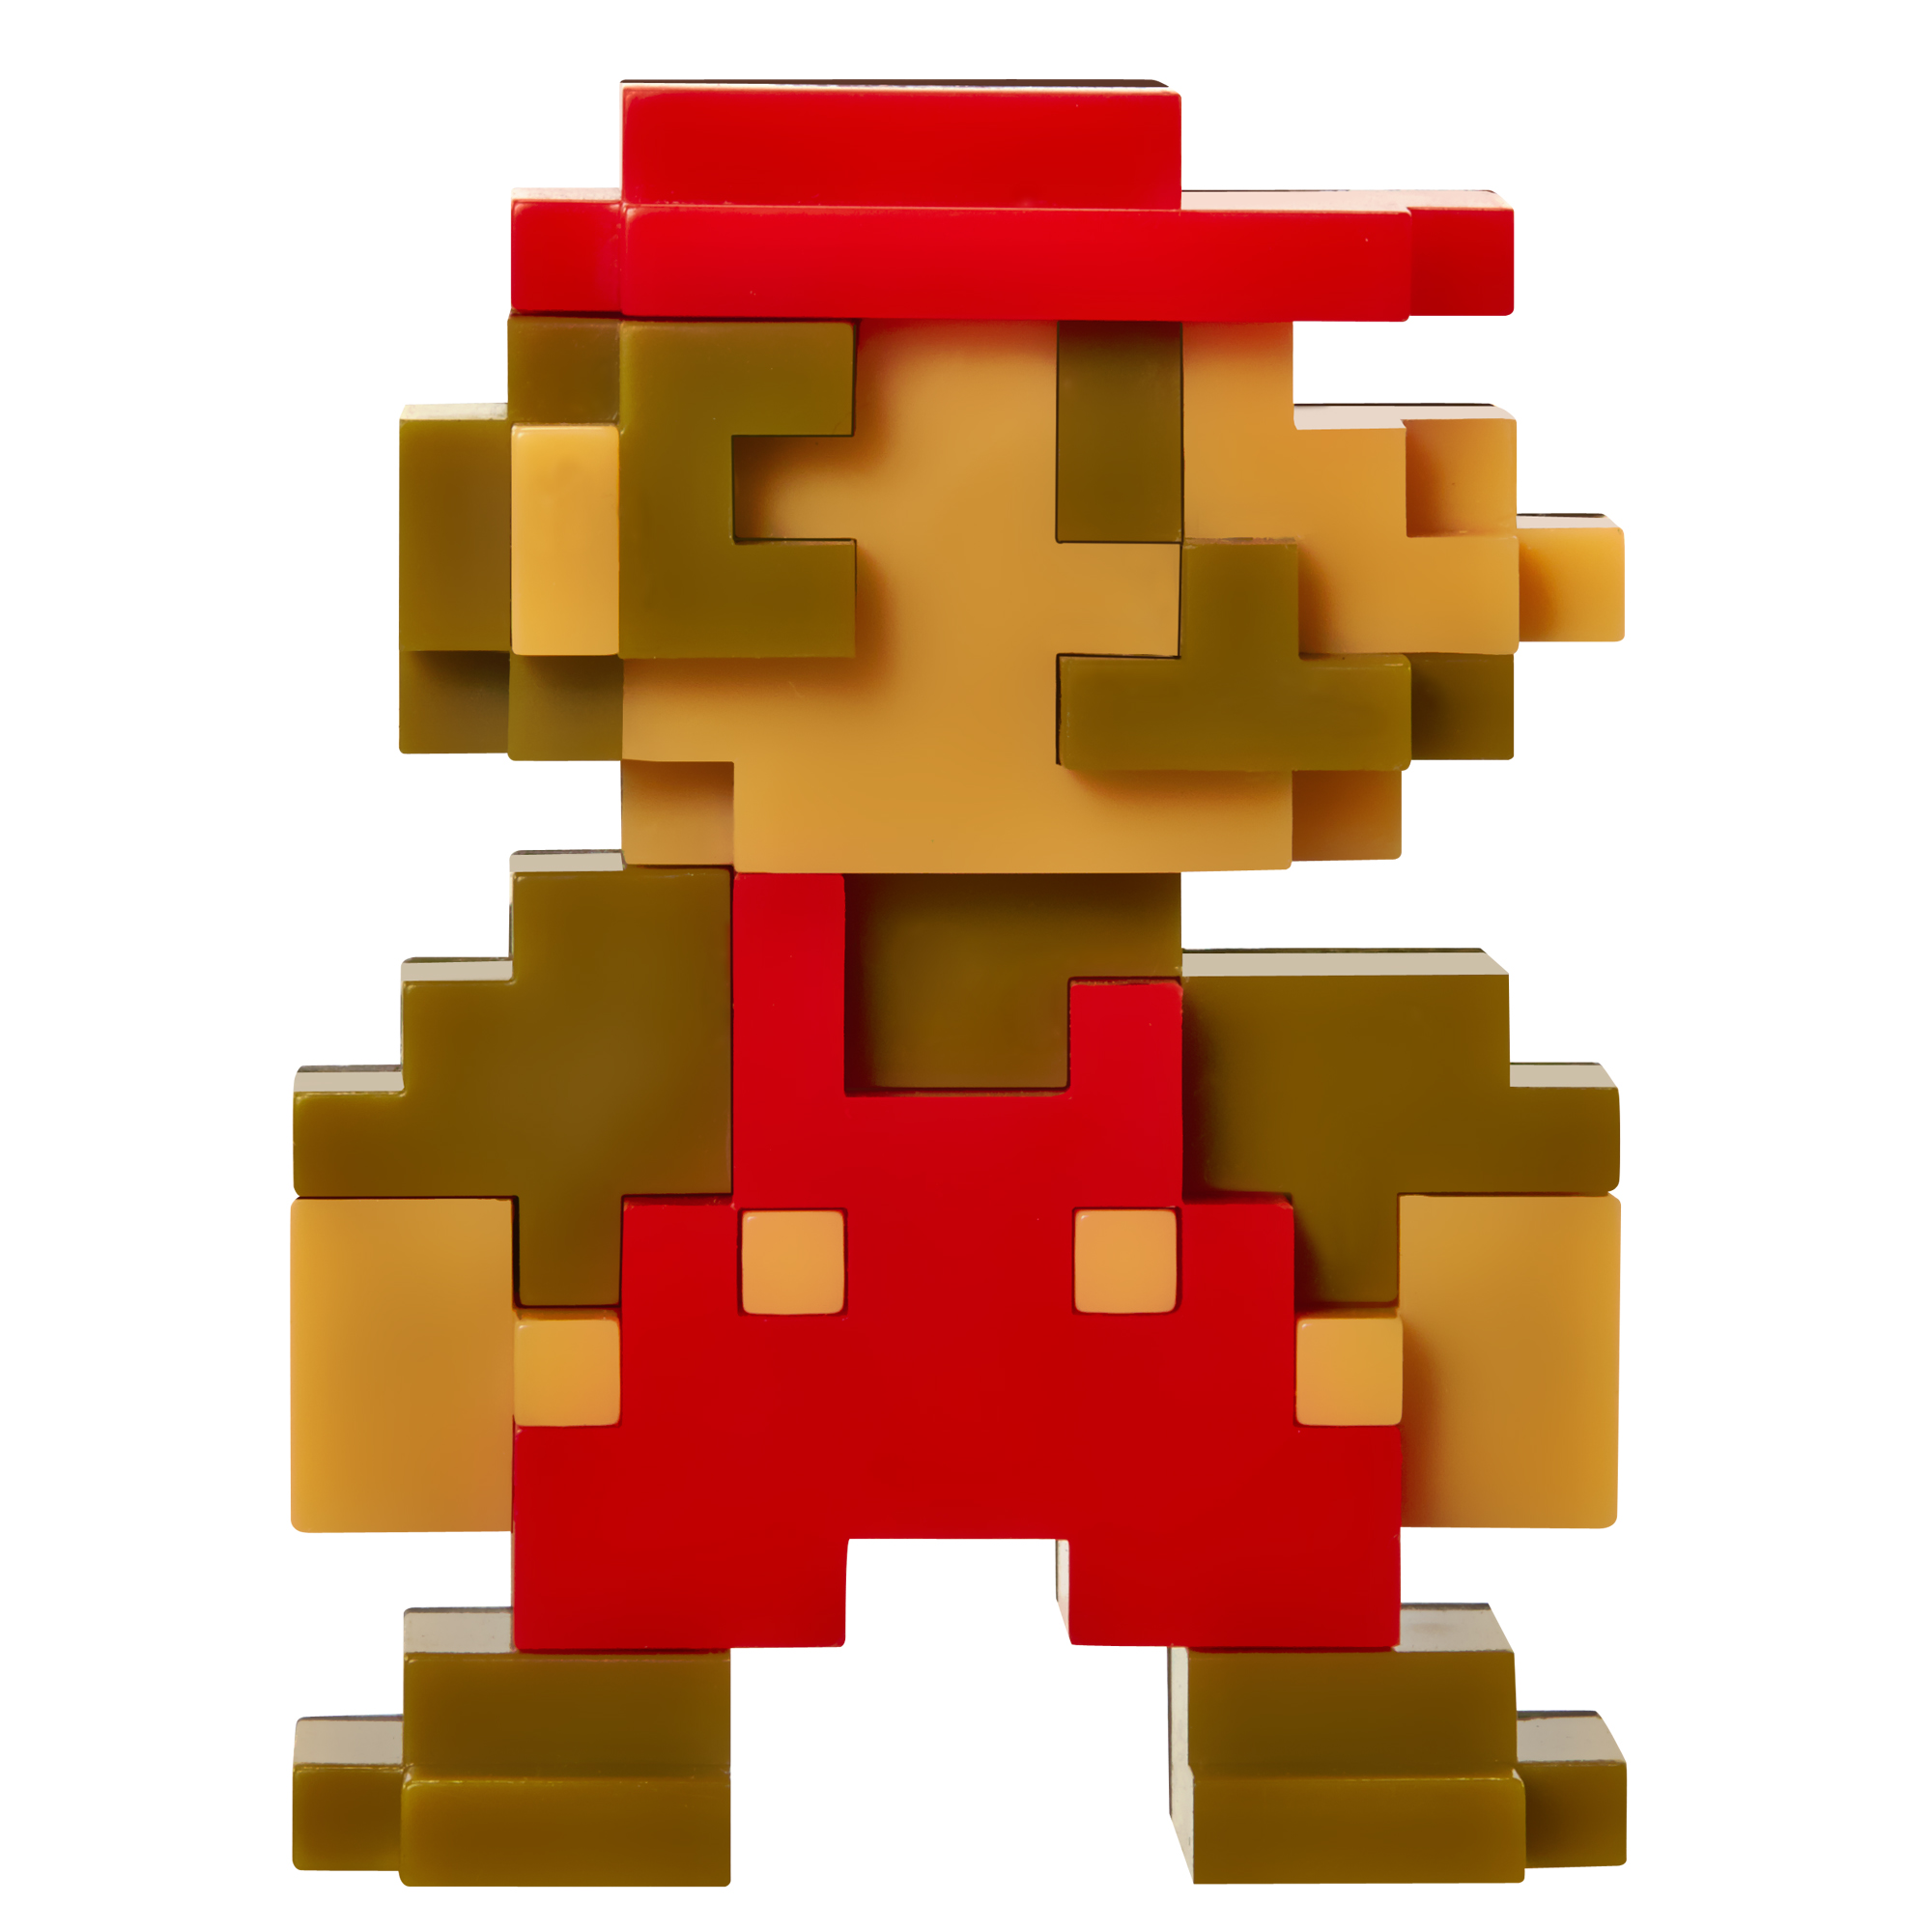 Mario bros 8. Марио 1985 спрайты. Марио амибо пиксель. Марио спрайт для скретч. Марио гриб пиксельный.